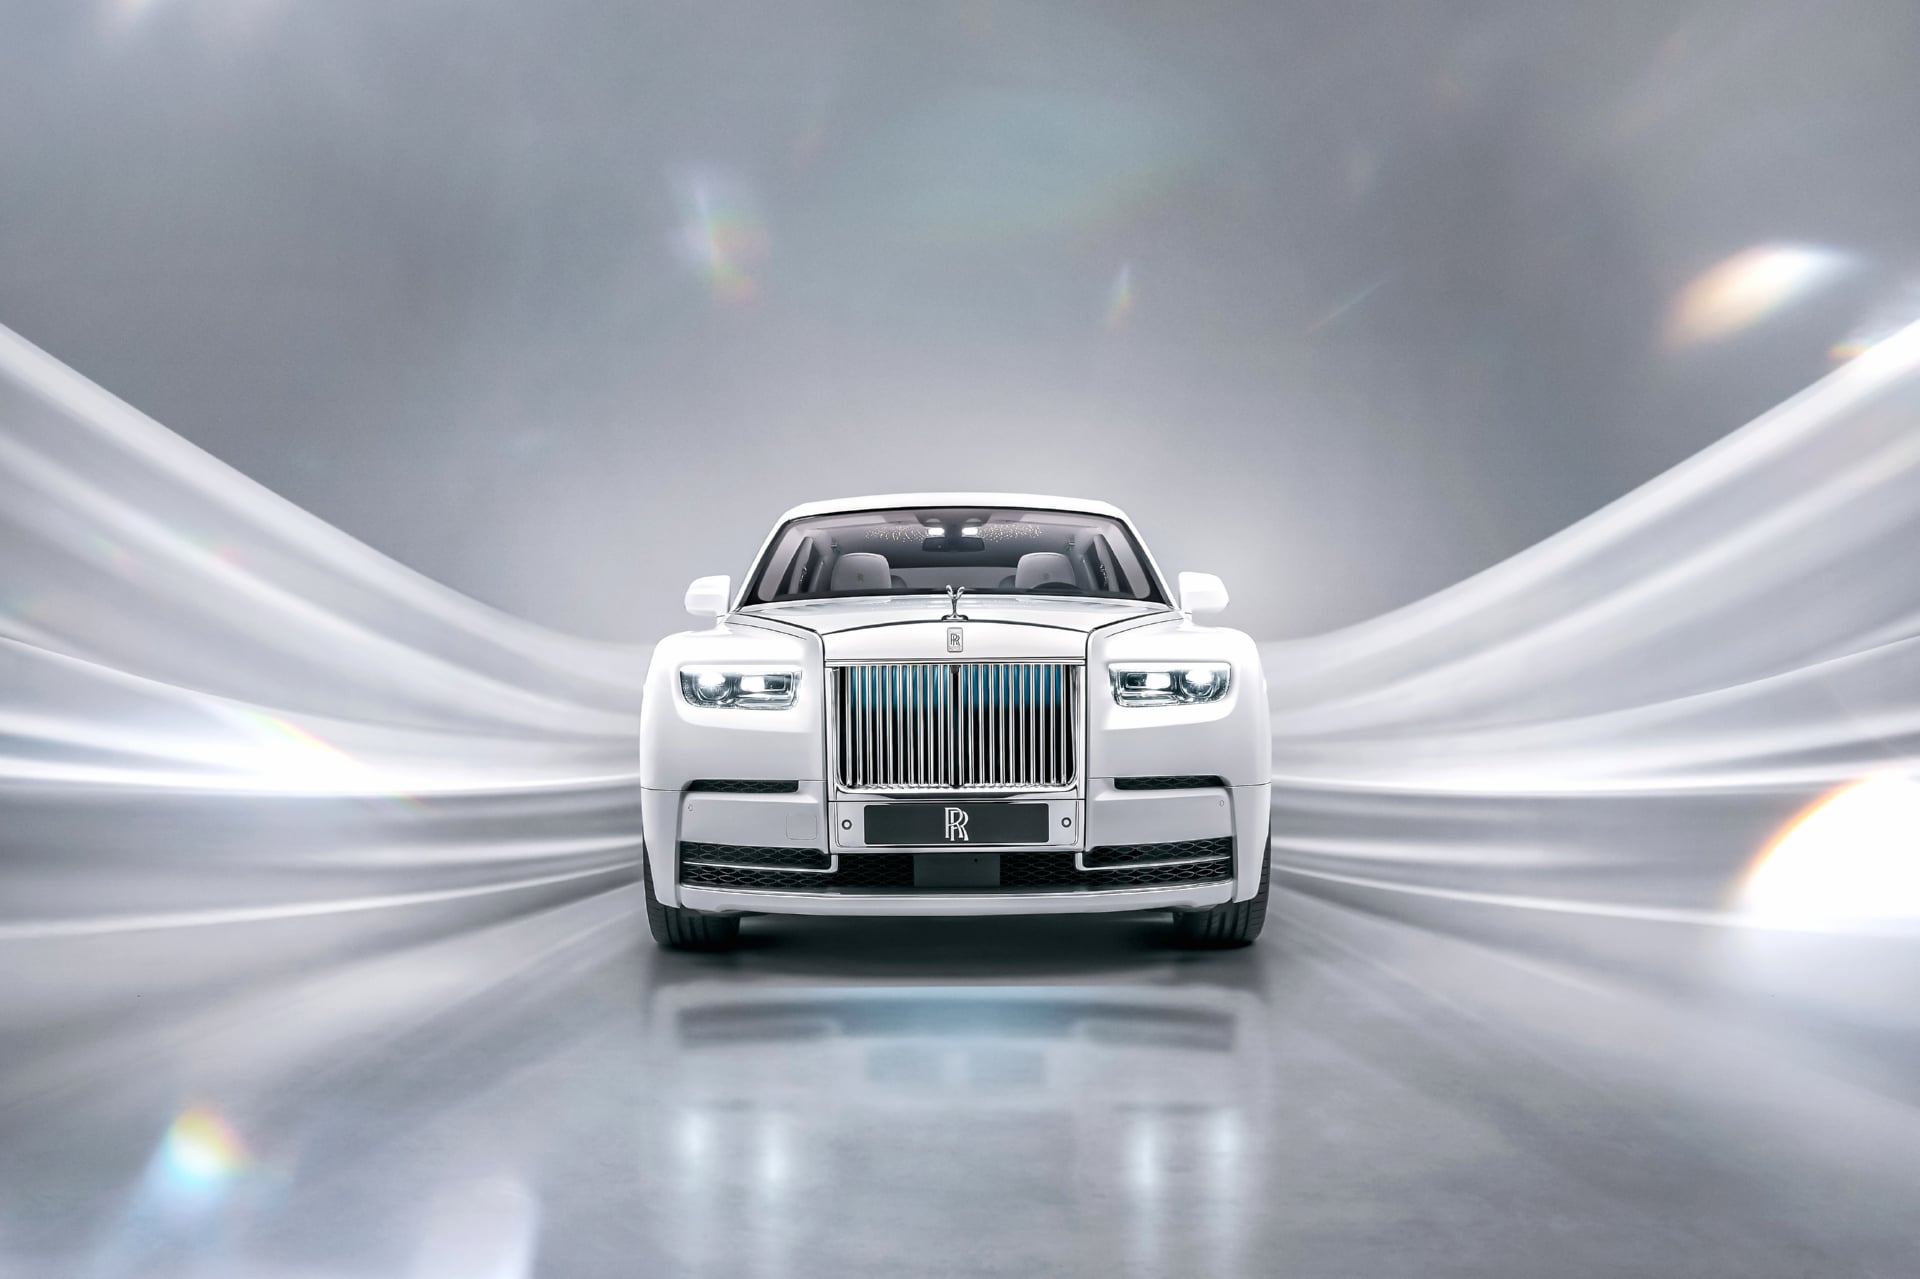 Rolls-Royce Phantom EWB Platino at 1024 x 768 size wallpapers HD quality